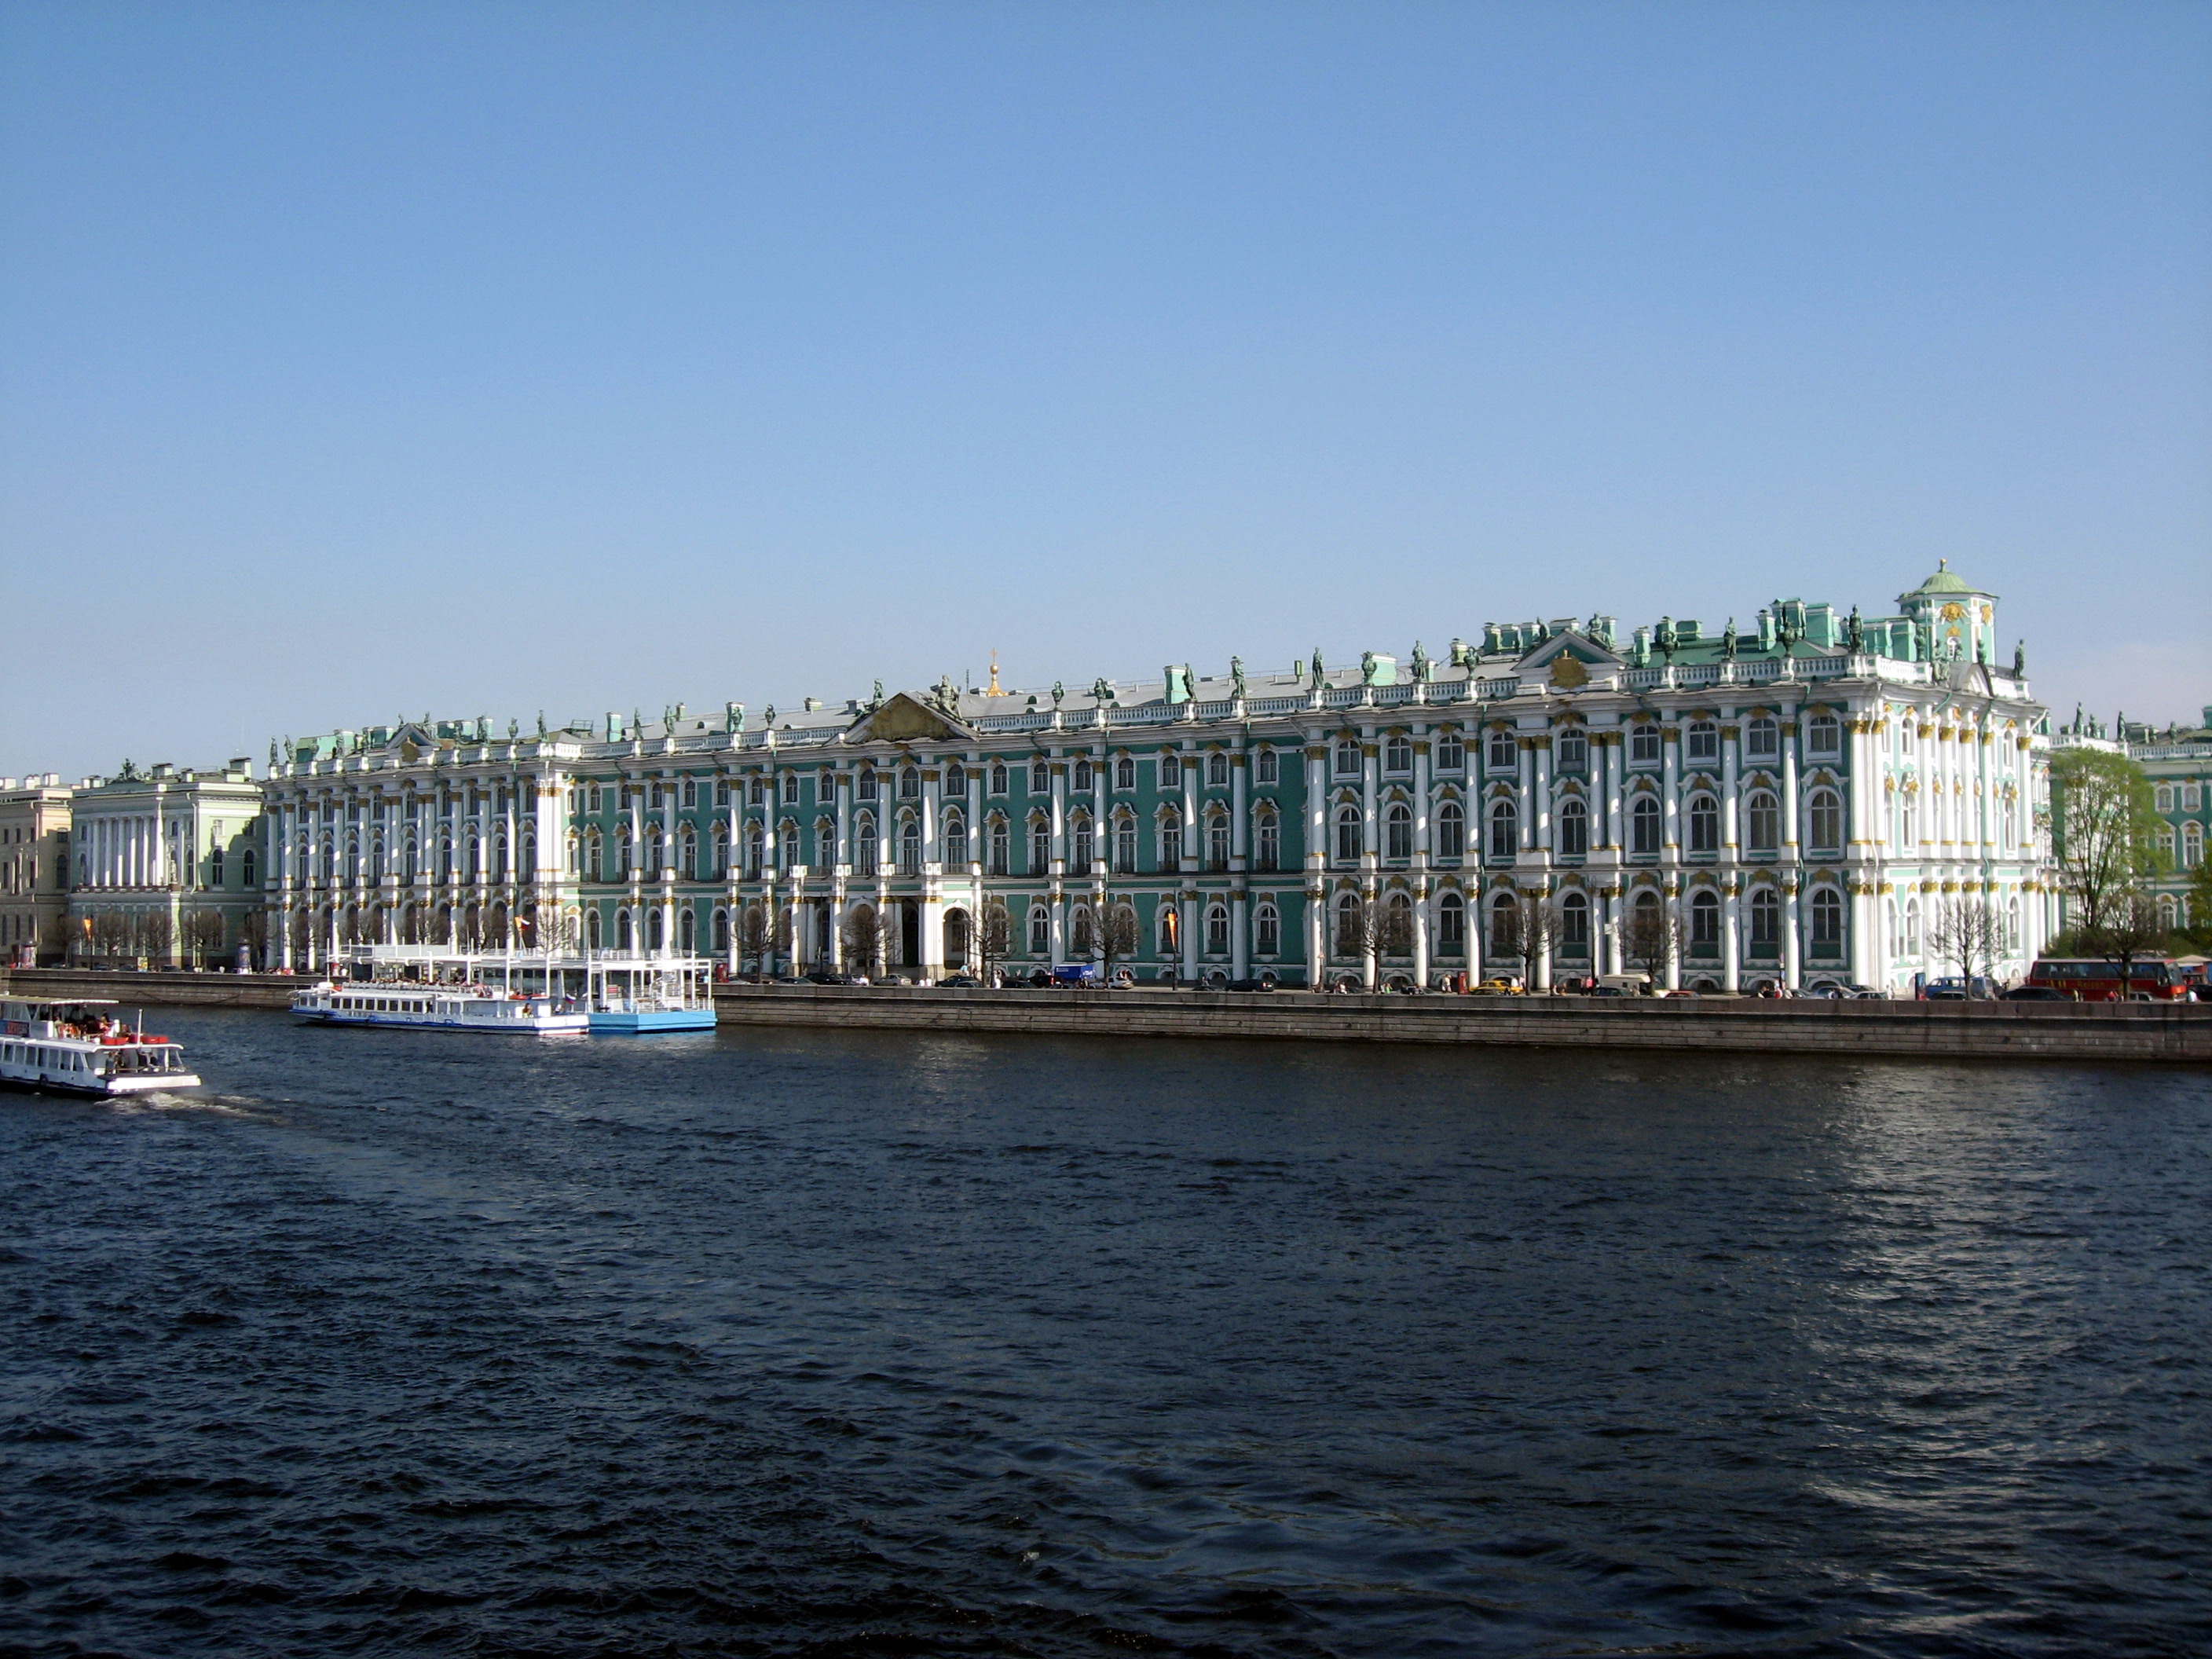 Winter Palace - Wikipedia